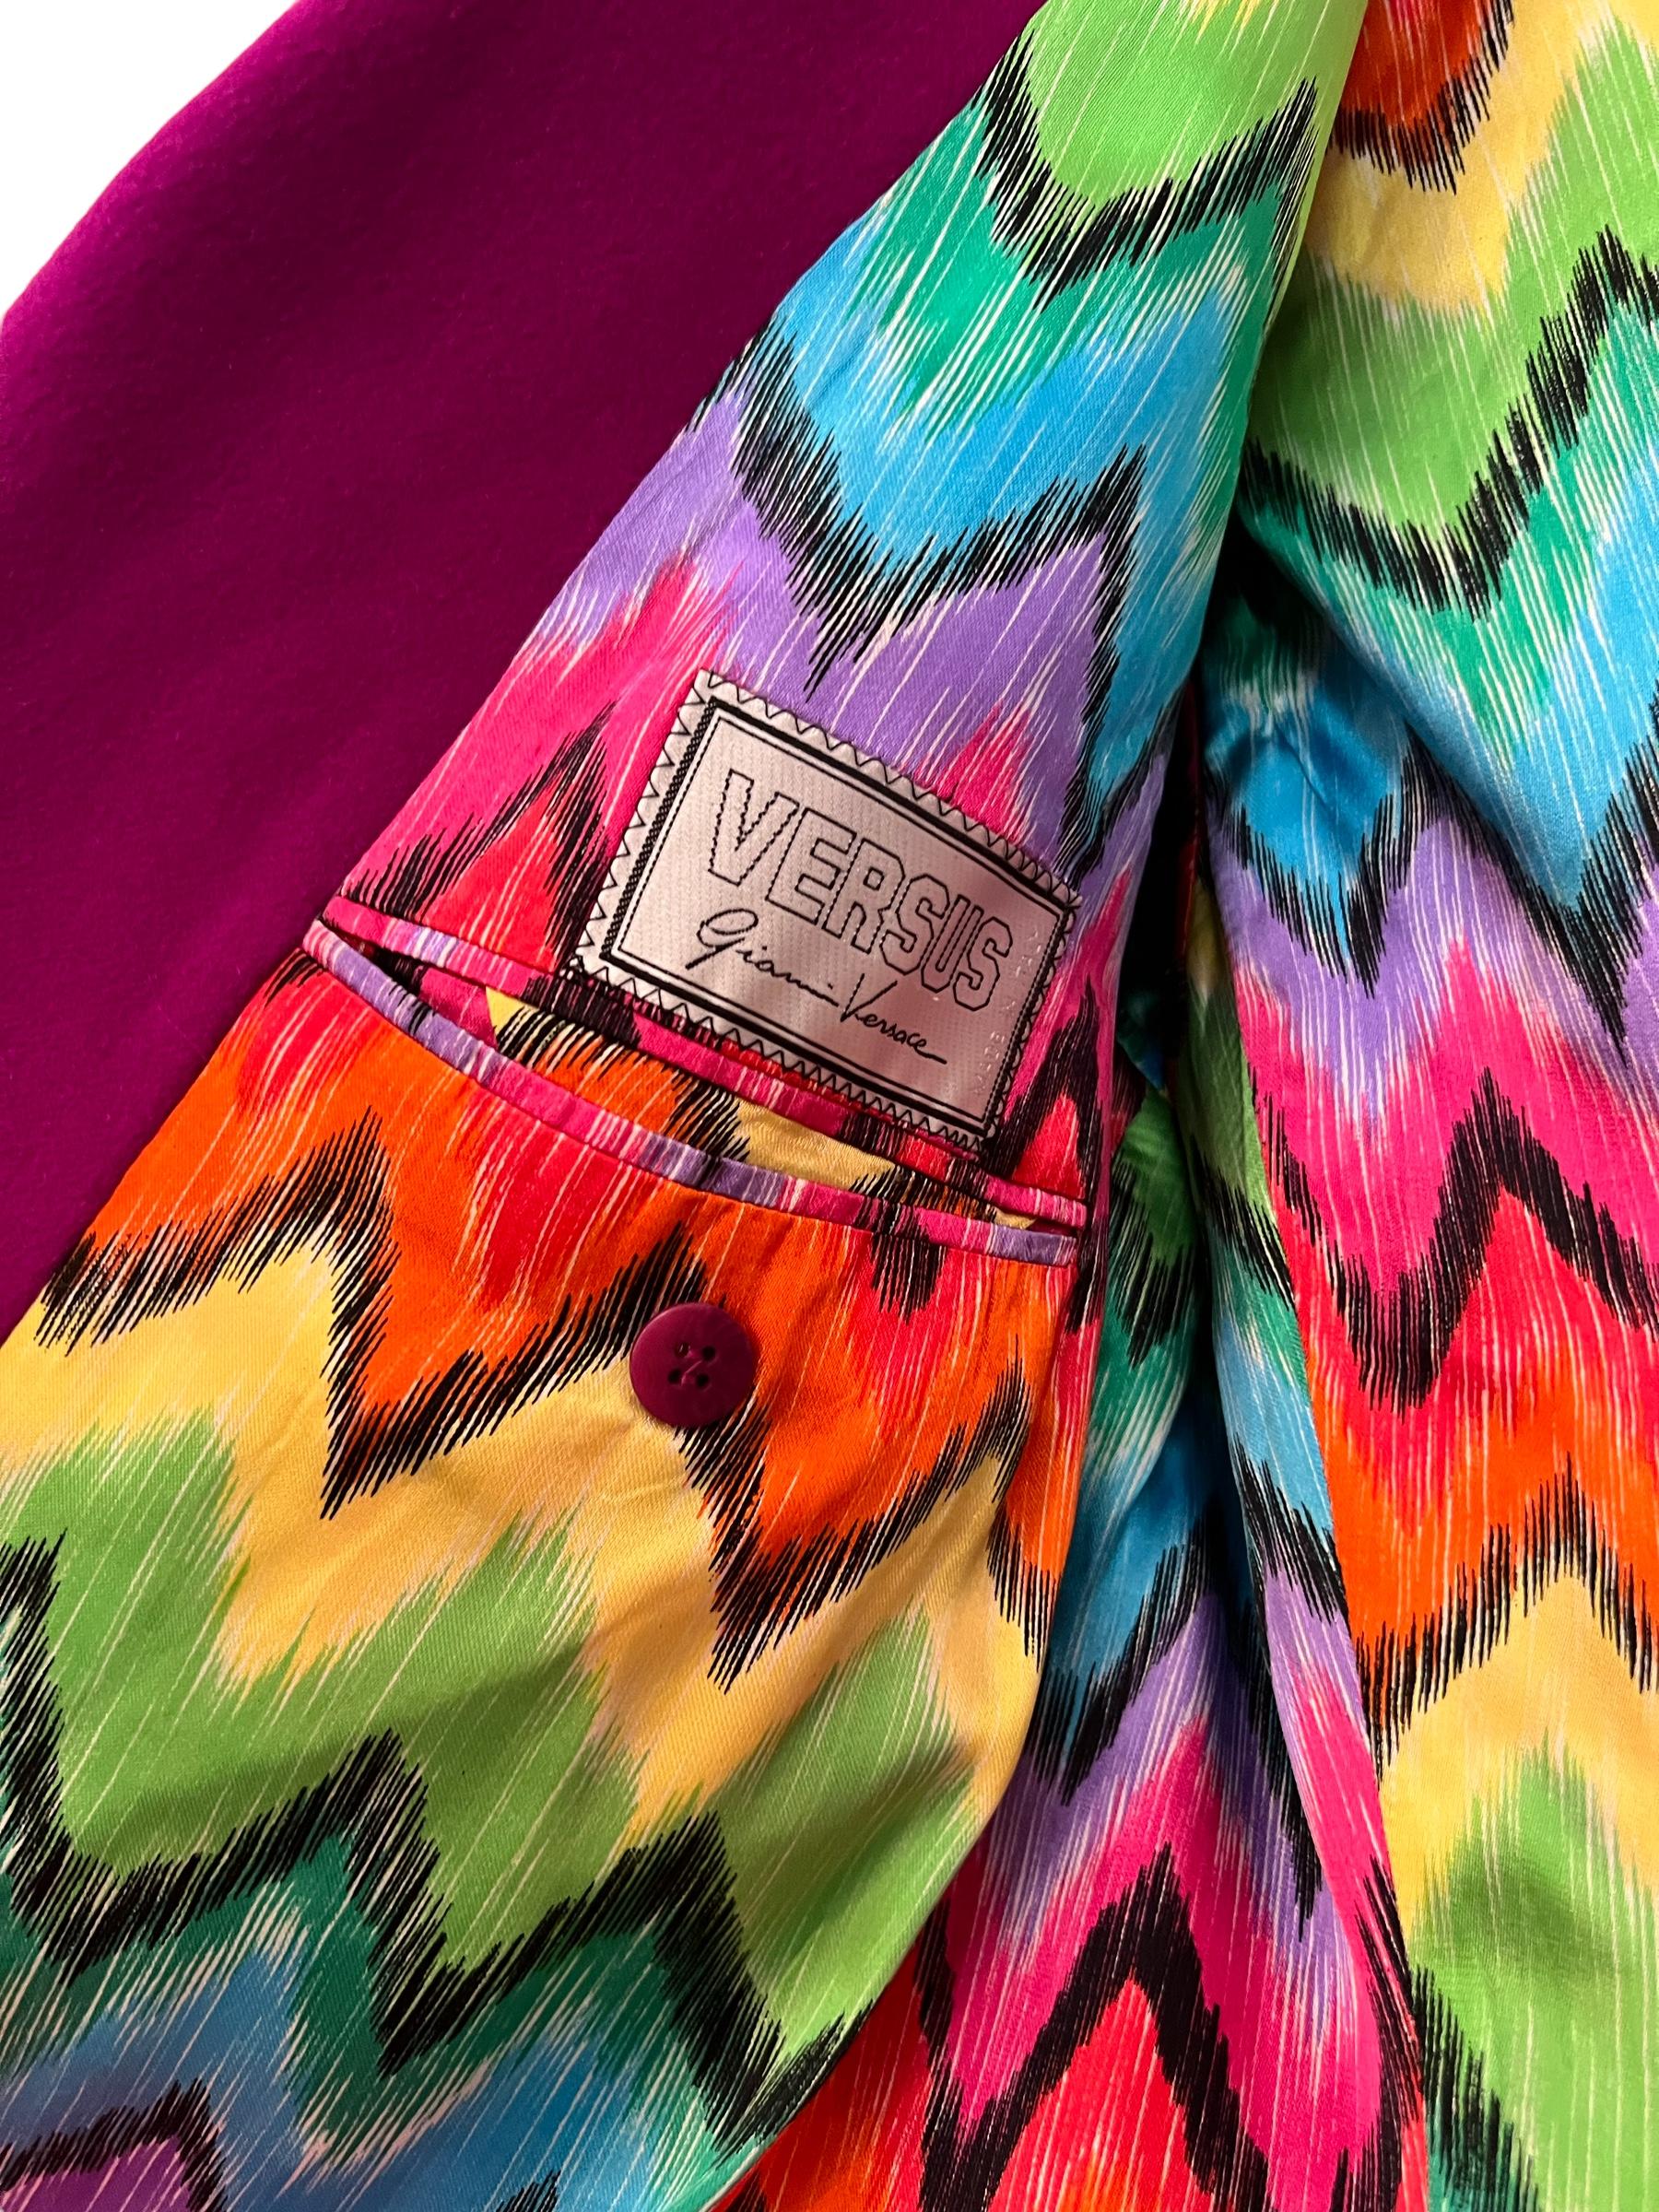 Versus by Gianni Versace - Veste blazer en cachemire doublée de rose magenta arc-en-ciel en vente 8